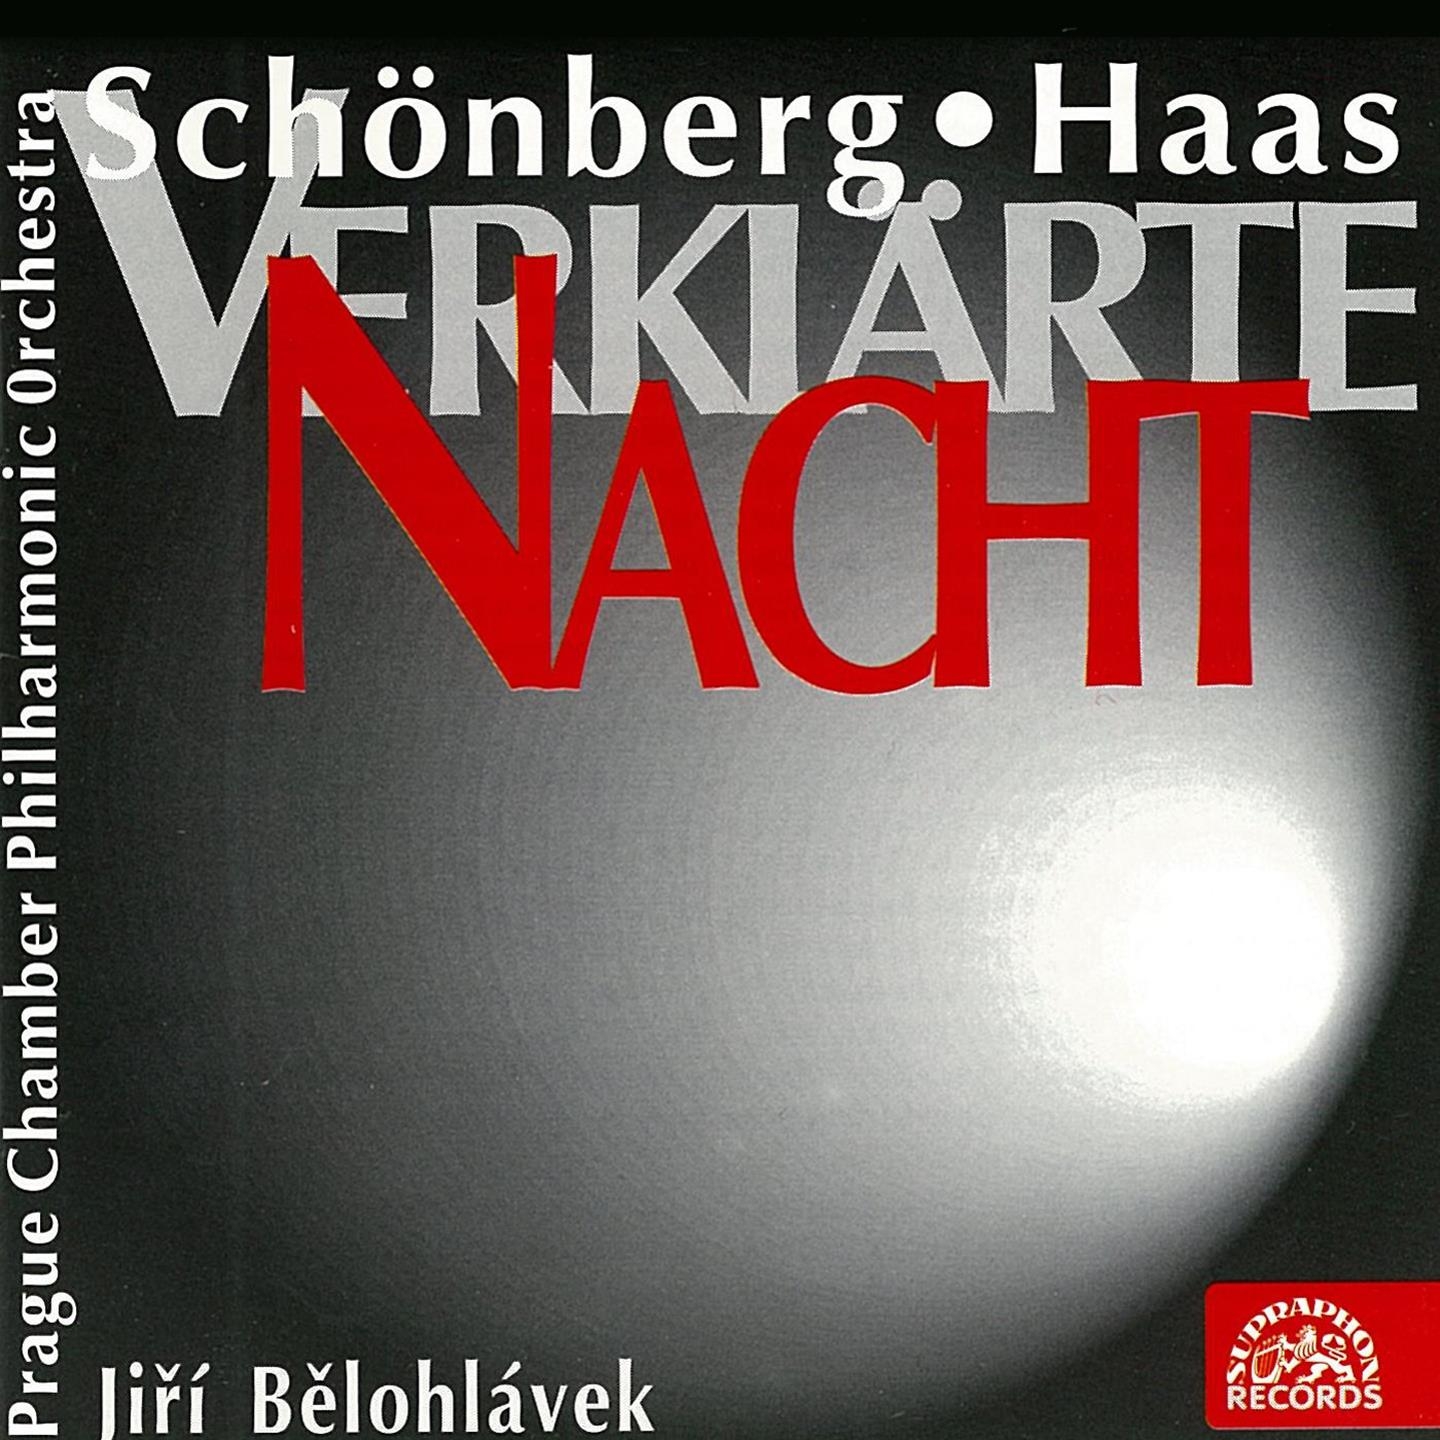 Sch nberg and Haas: Verkl rte Nacht